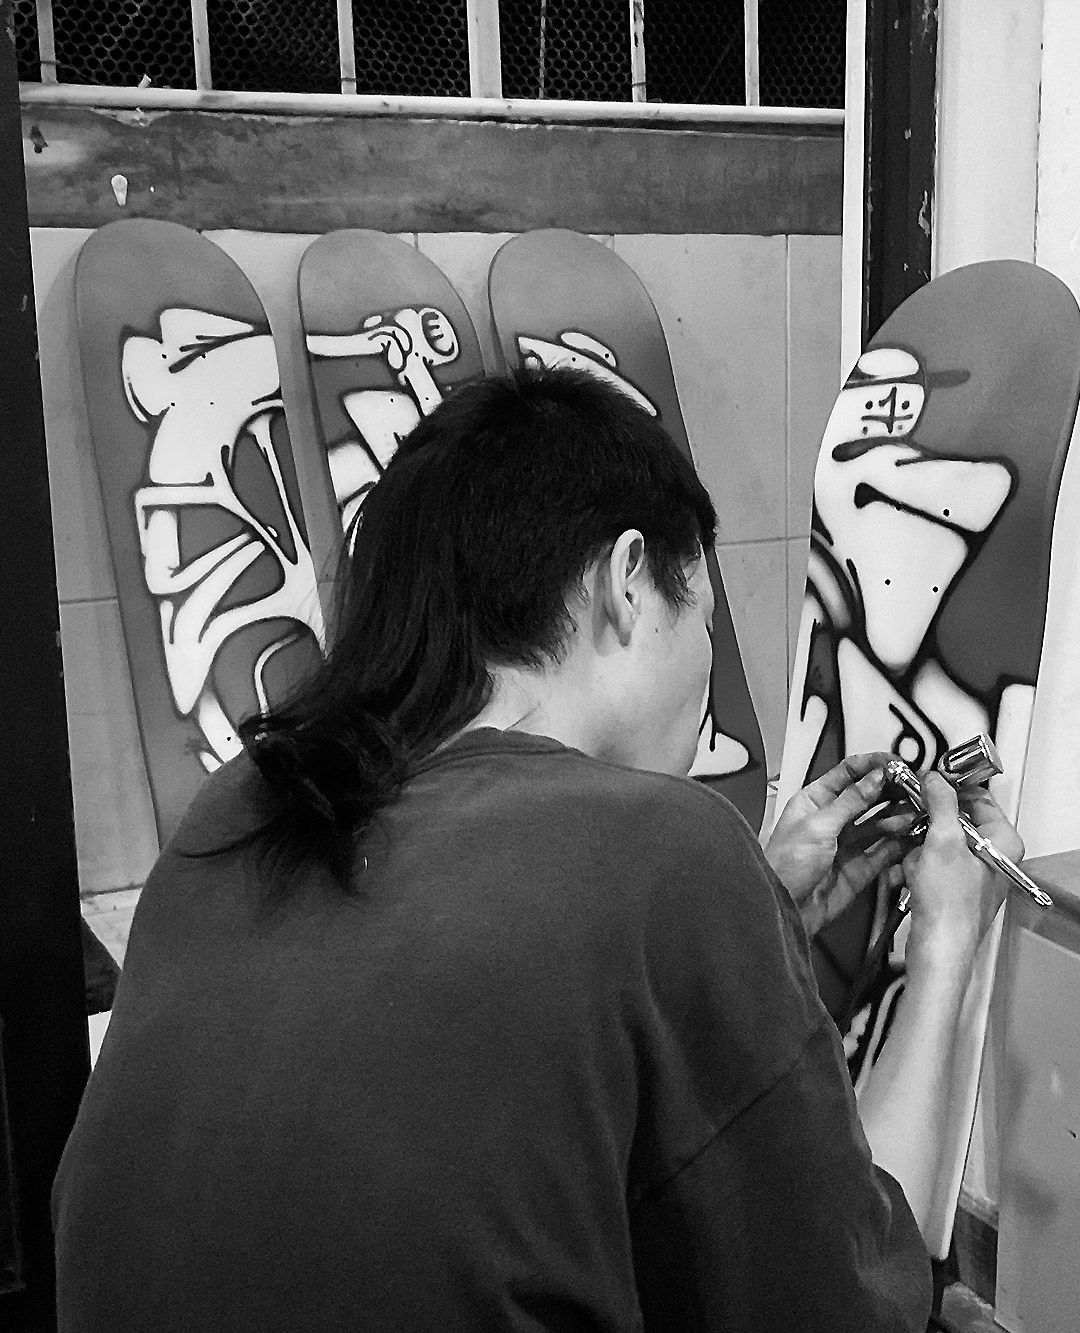 Spraying Board Vietnam, le Work in Progress de l'artiste VuiQa